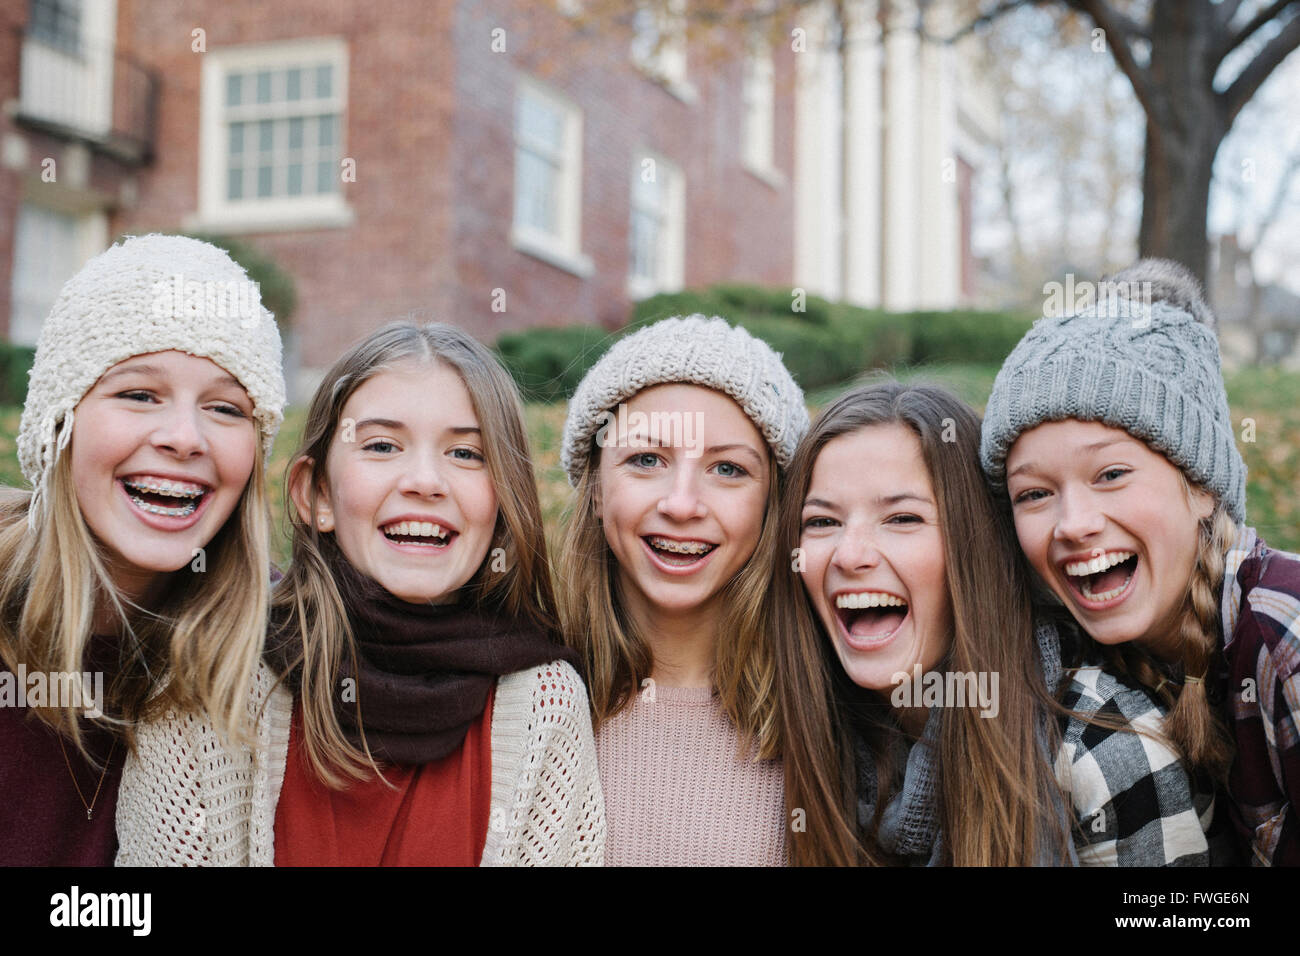 Eine Gruppe von fünf Mädchen im Teenageralter im Freien in Wollmützen und Schals. Stockfoto